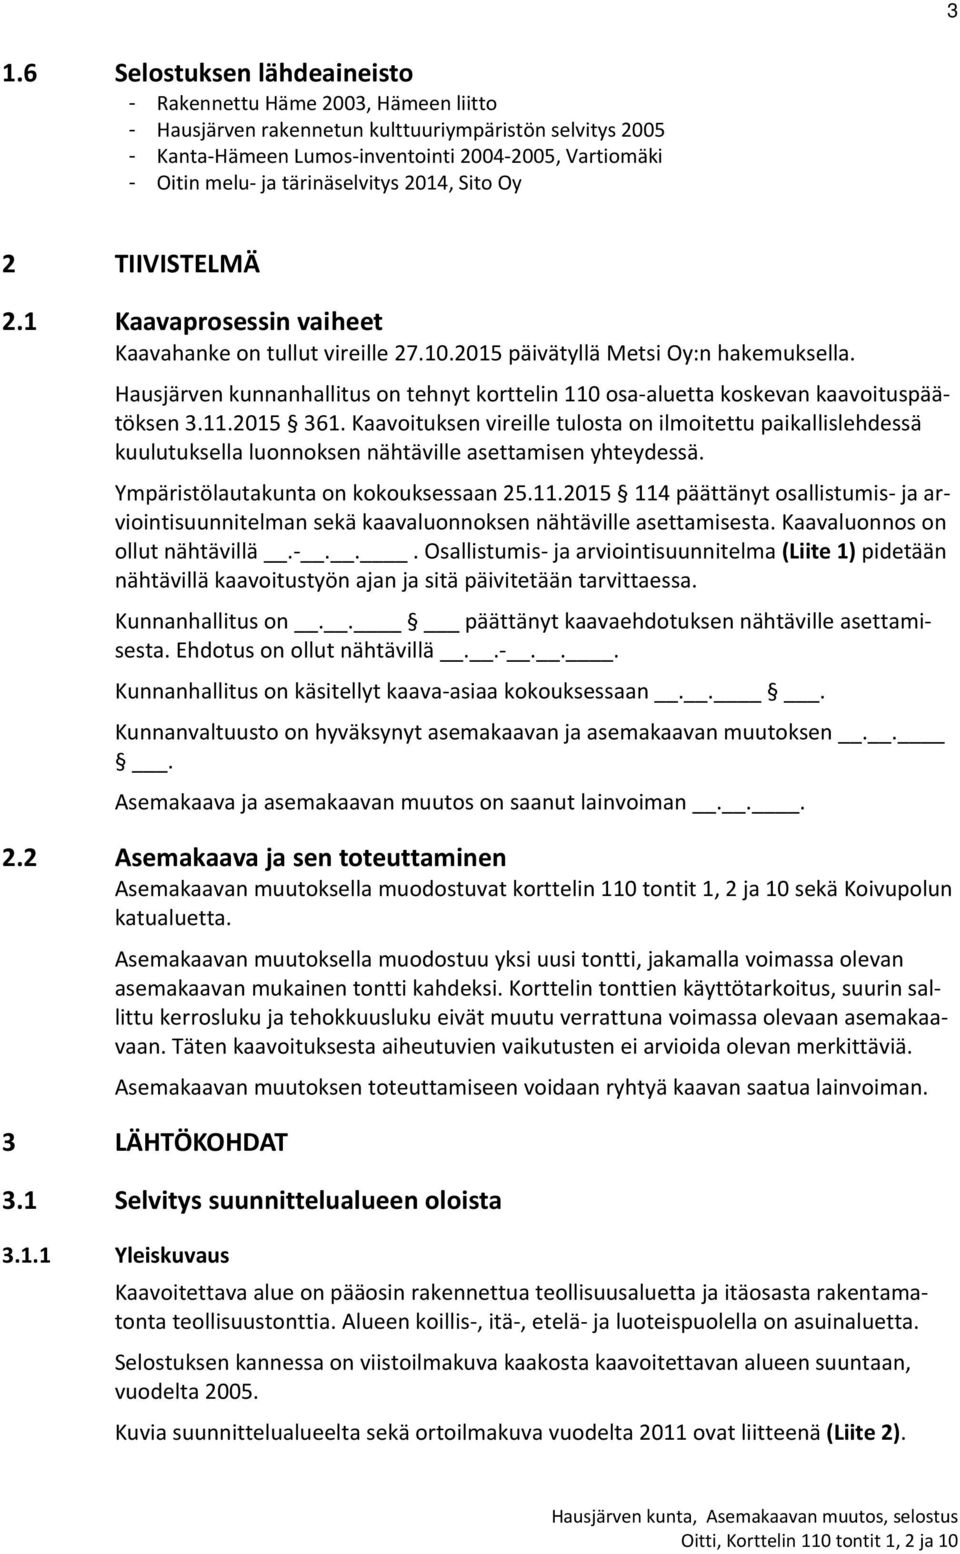 Hausjärven kunnanhallitus on tehnyt korttelin 110 osa aluetta koskevan kaavoituspäätöksen 3.11.2015 361.